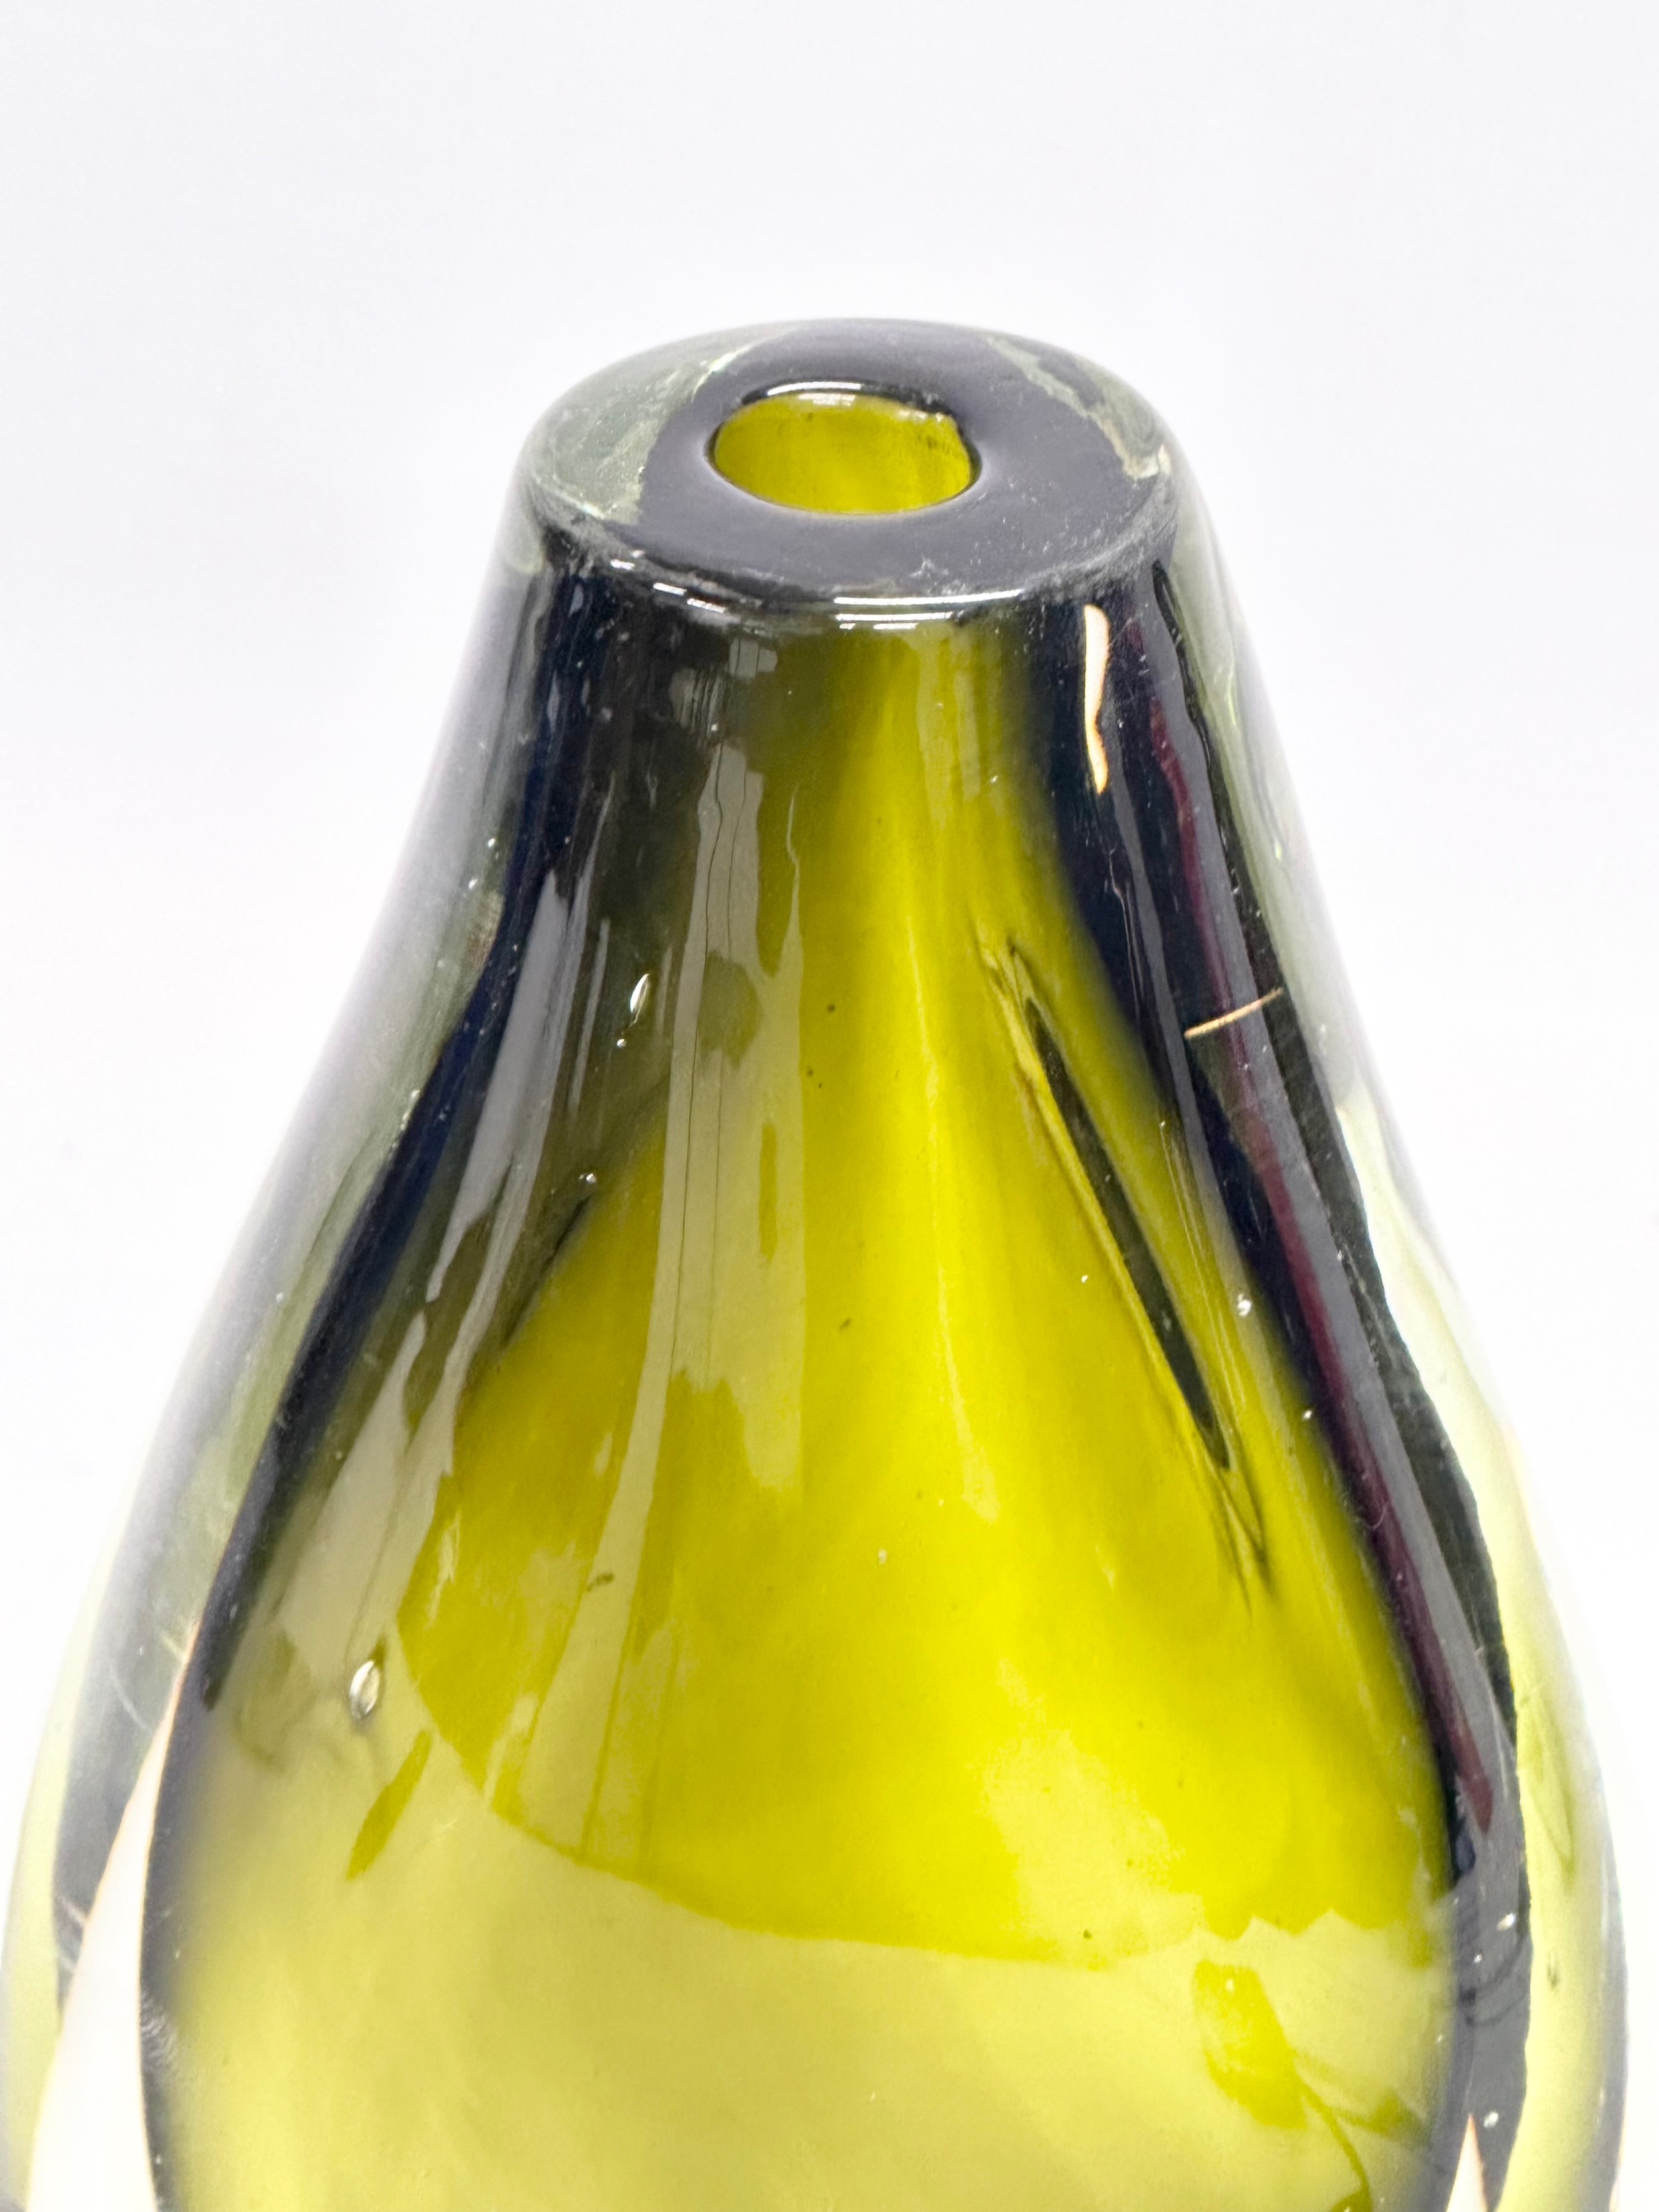 A Murano Sommerso Glass vase designed by Flavio Poli for Seguso Vetri d'Arte. 12x21cm - Image 2 of 5